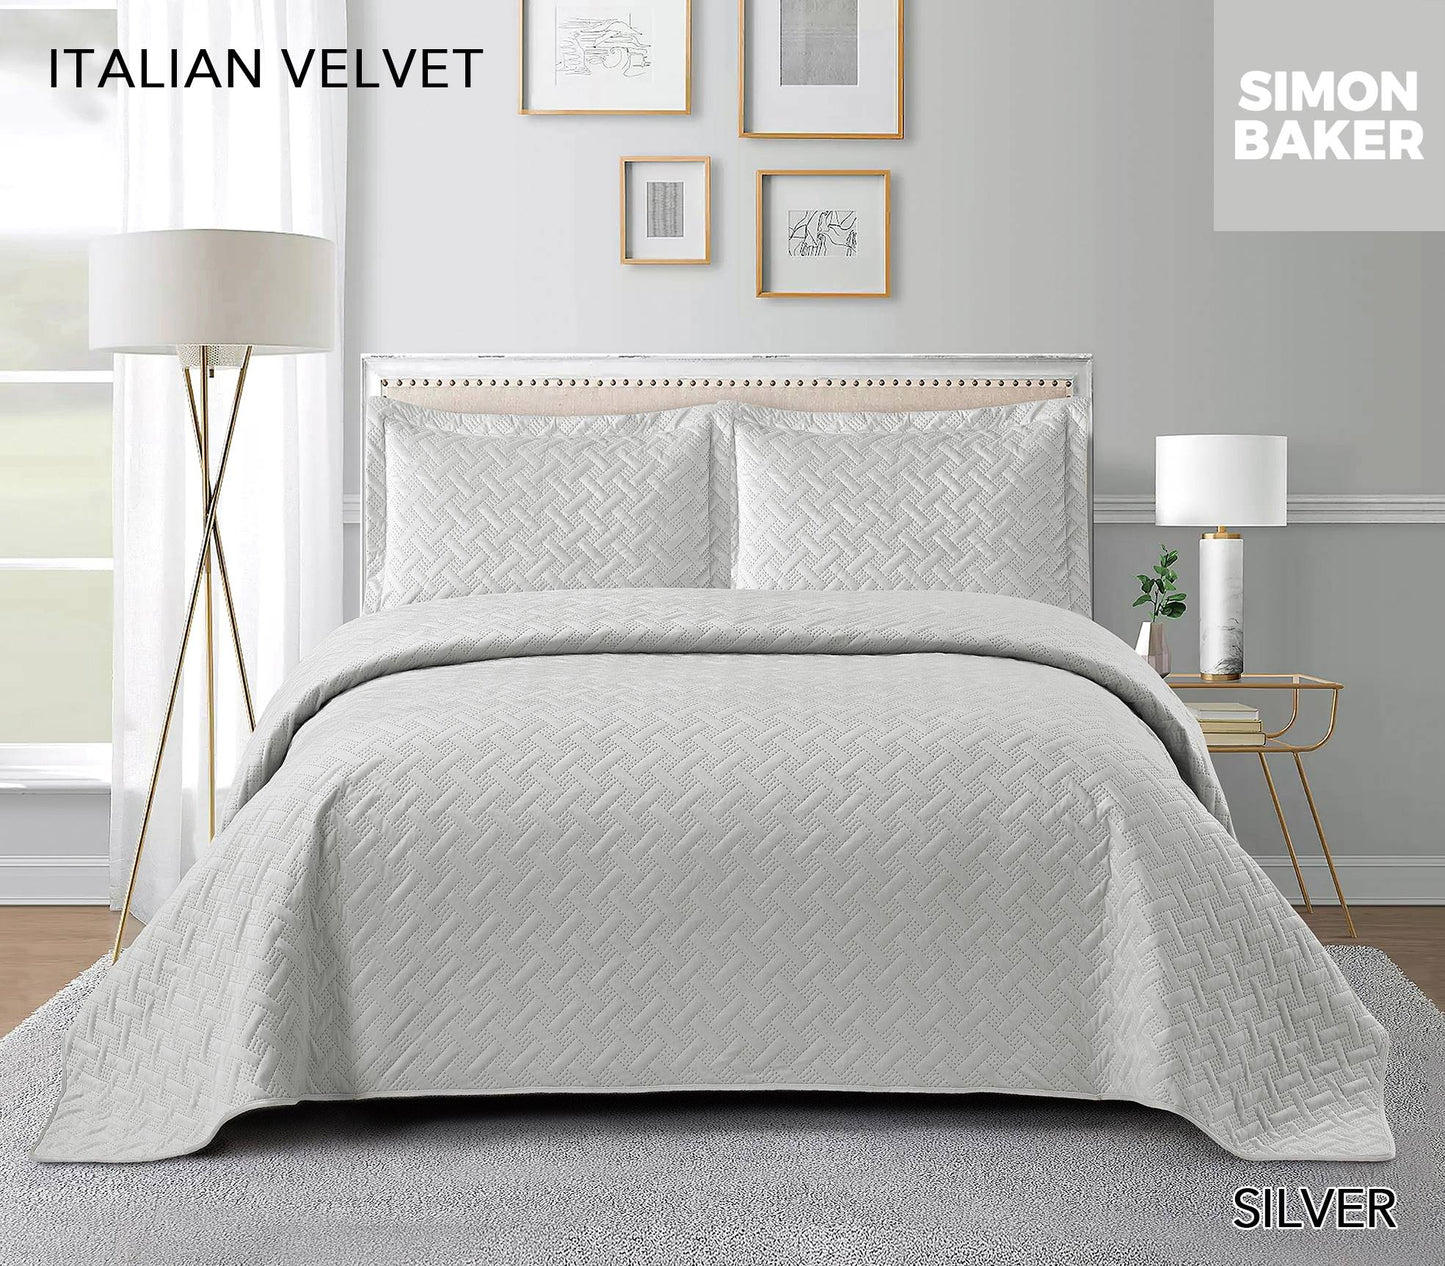 Simon Baker -  Italian Velvet Bedspread Set - Silver (Various Sizes)